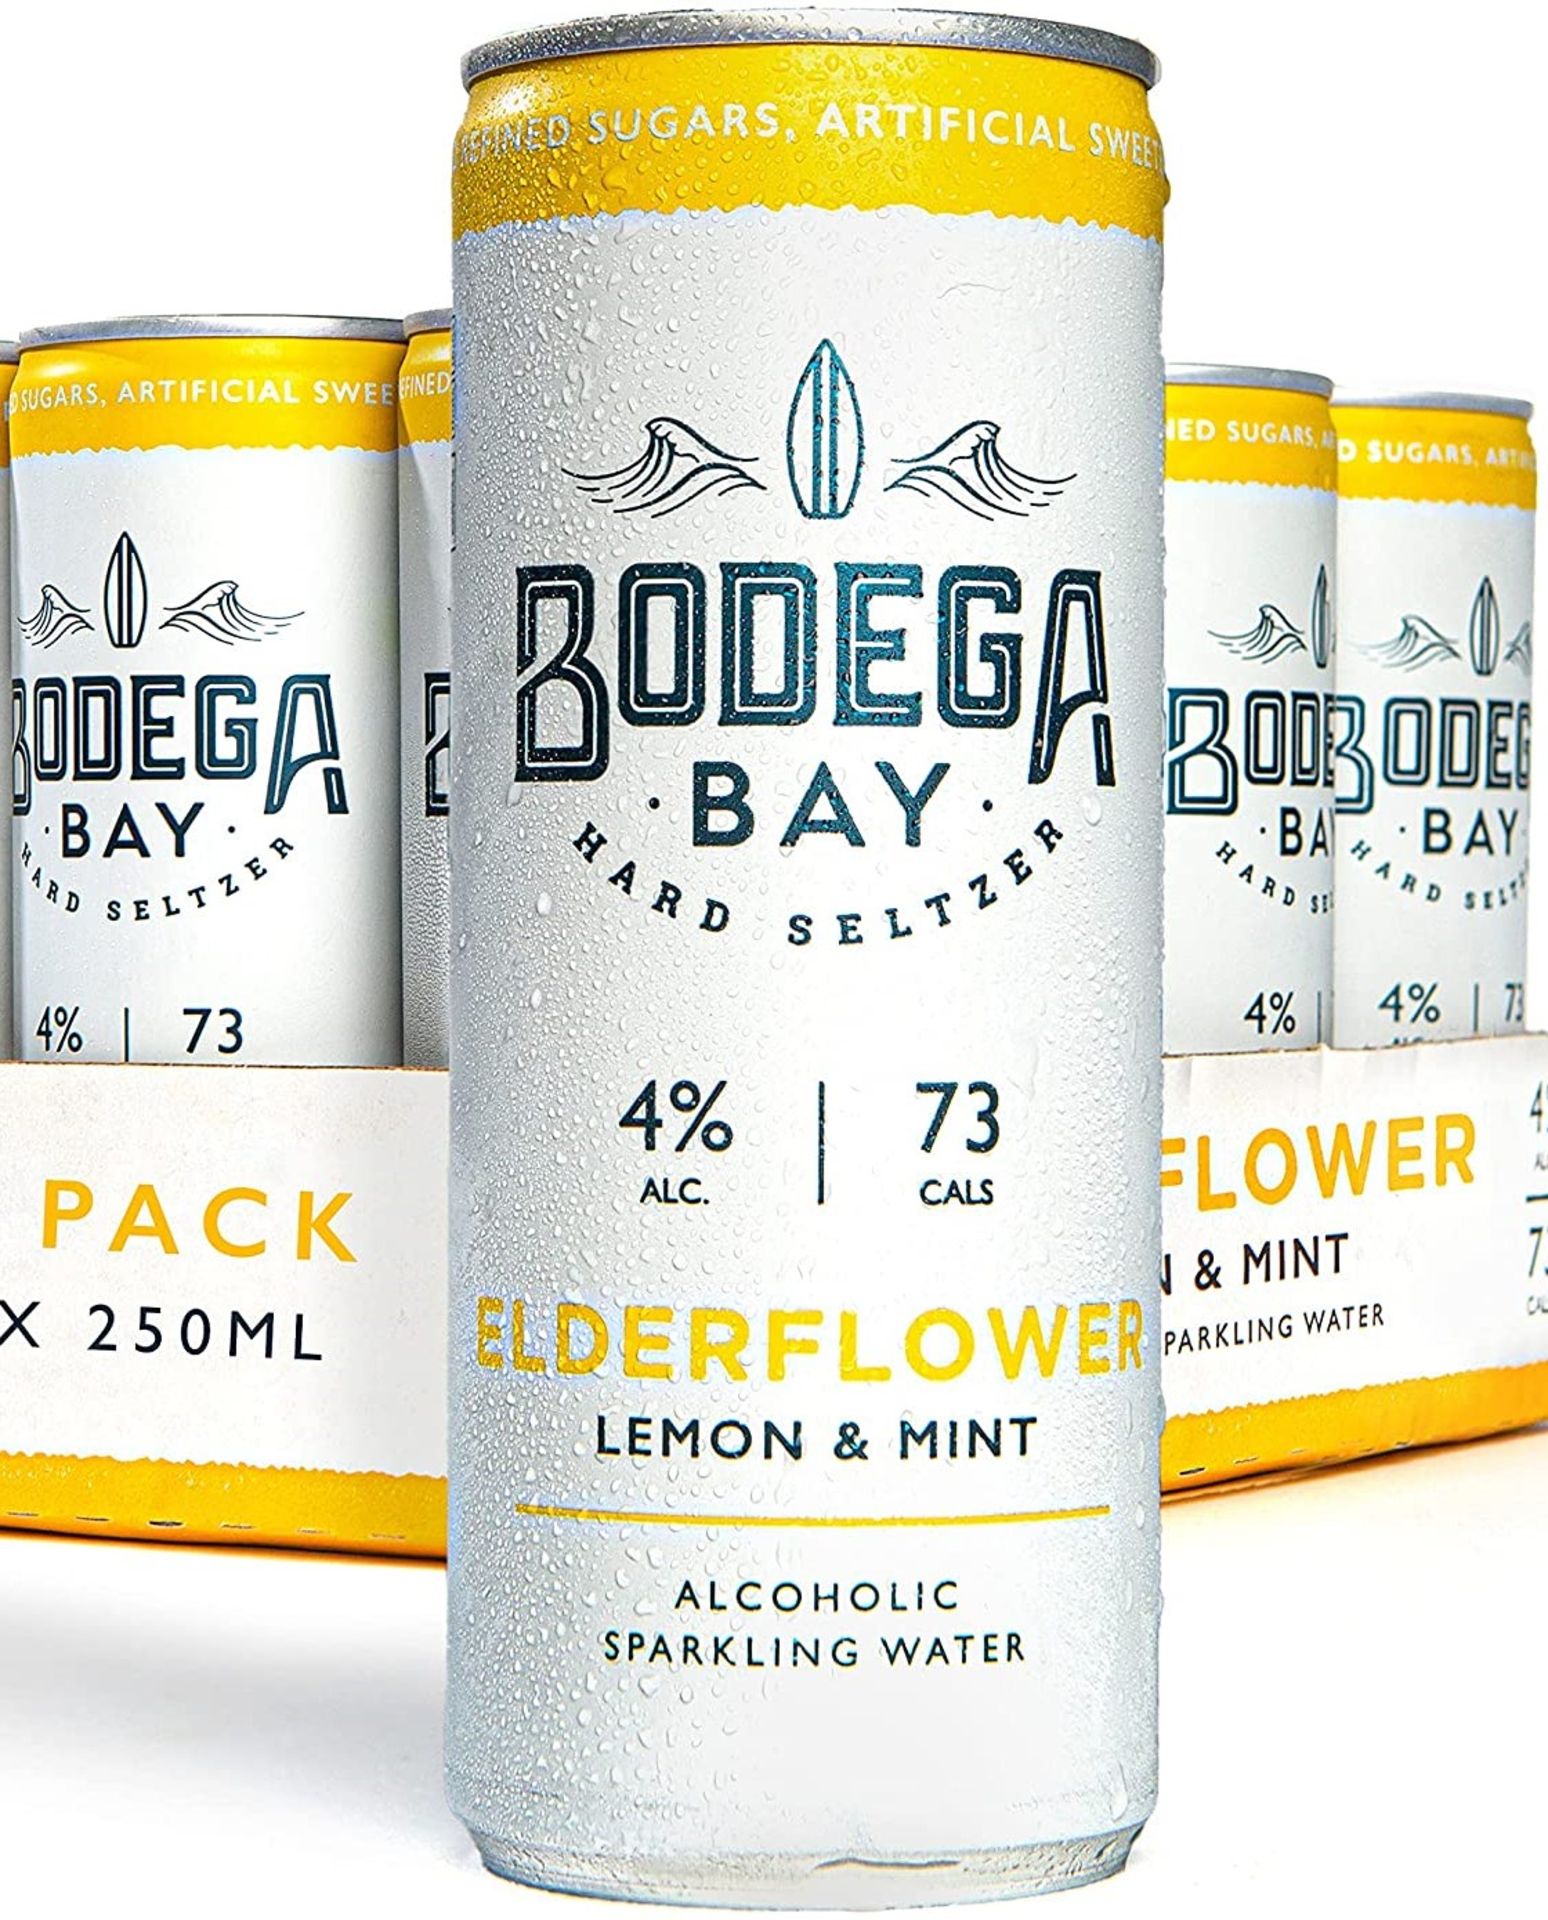 24 x Bodega Bay Hard Seltzer 250ml Alcoholic Sparkling Water Drinks - Elderflower Lemon & Mint - - Image 4 of 9